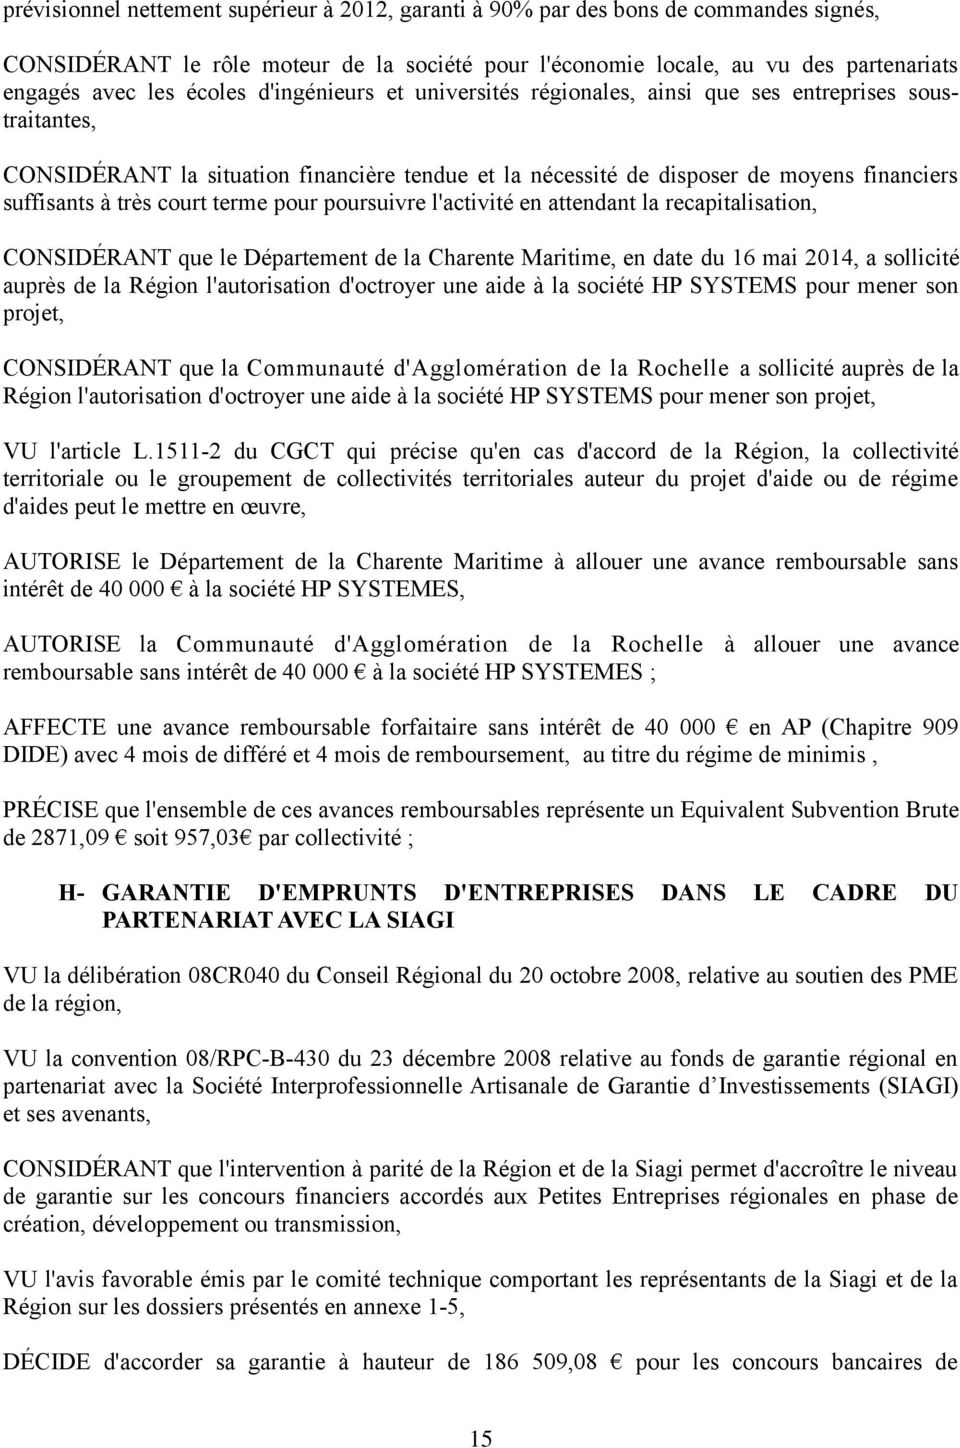 court terme pour poursuivre l'activité en attendant la recapitalisation, CONSIDÉRANT que le Département de la Charente Maritime, en date du 16 mai 2014, a sollicité auprès de la Région l'autorisation